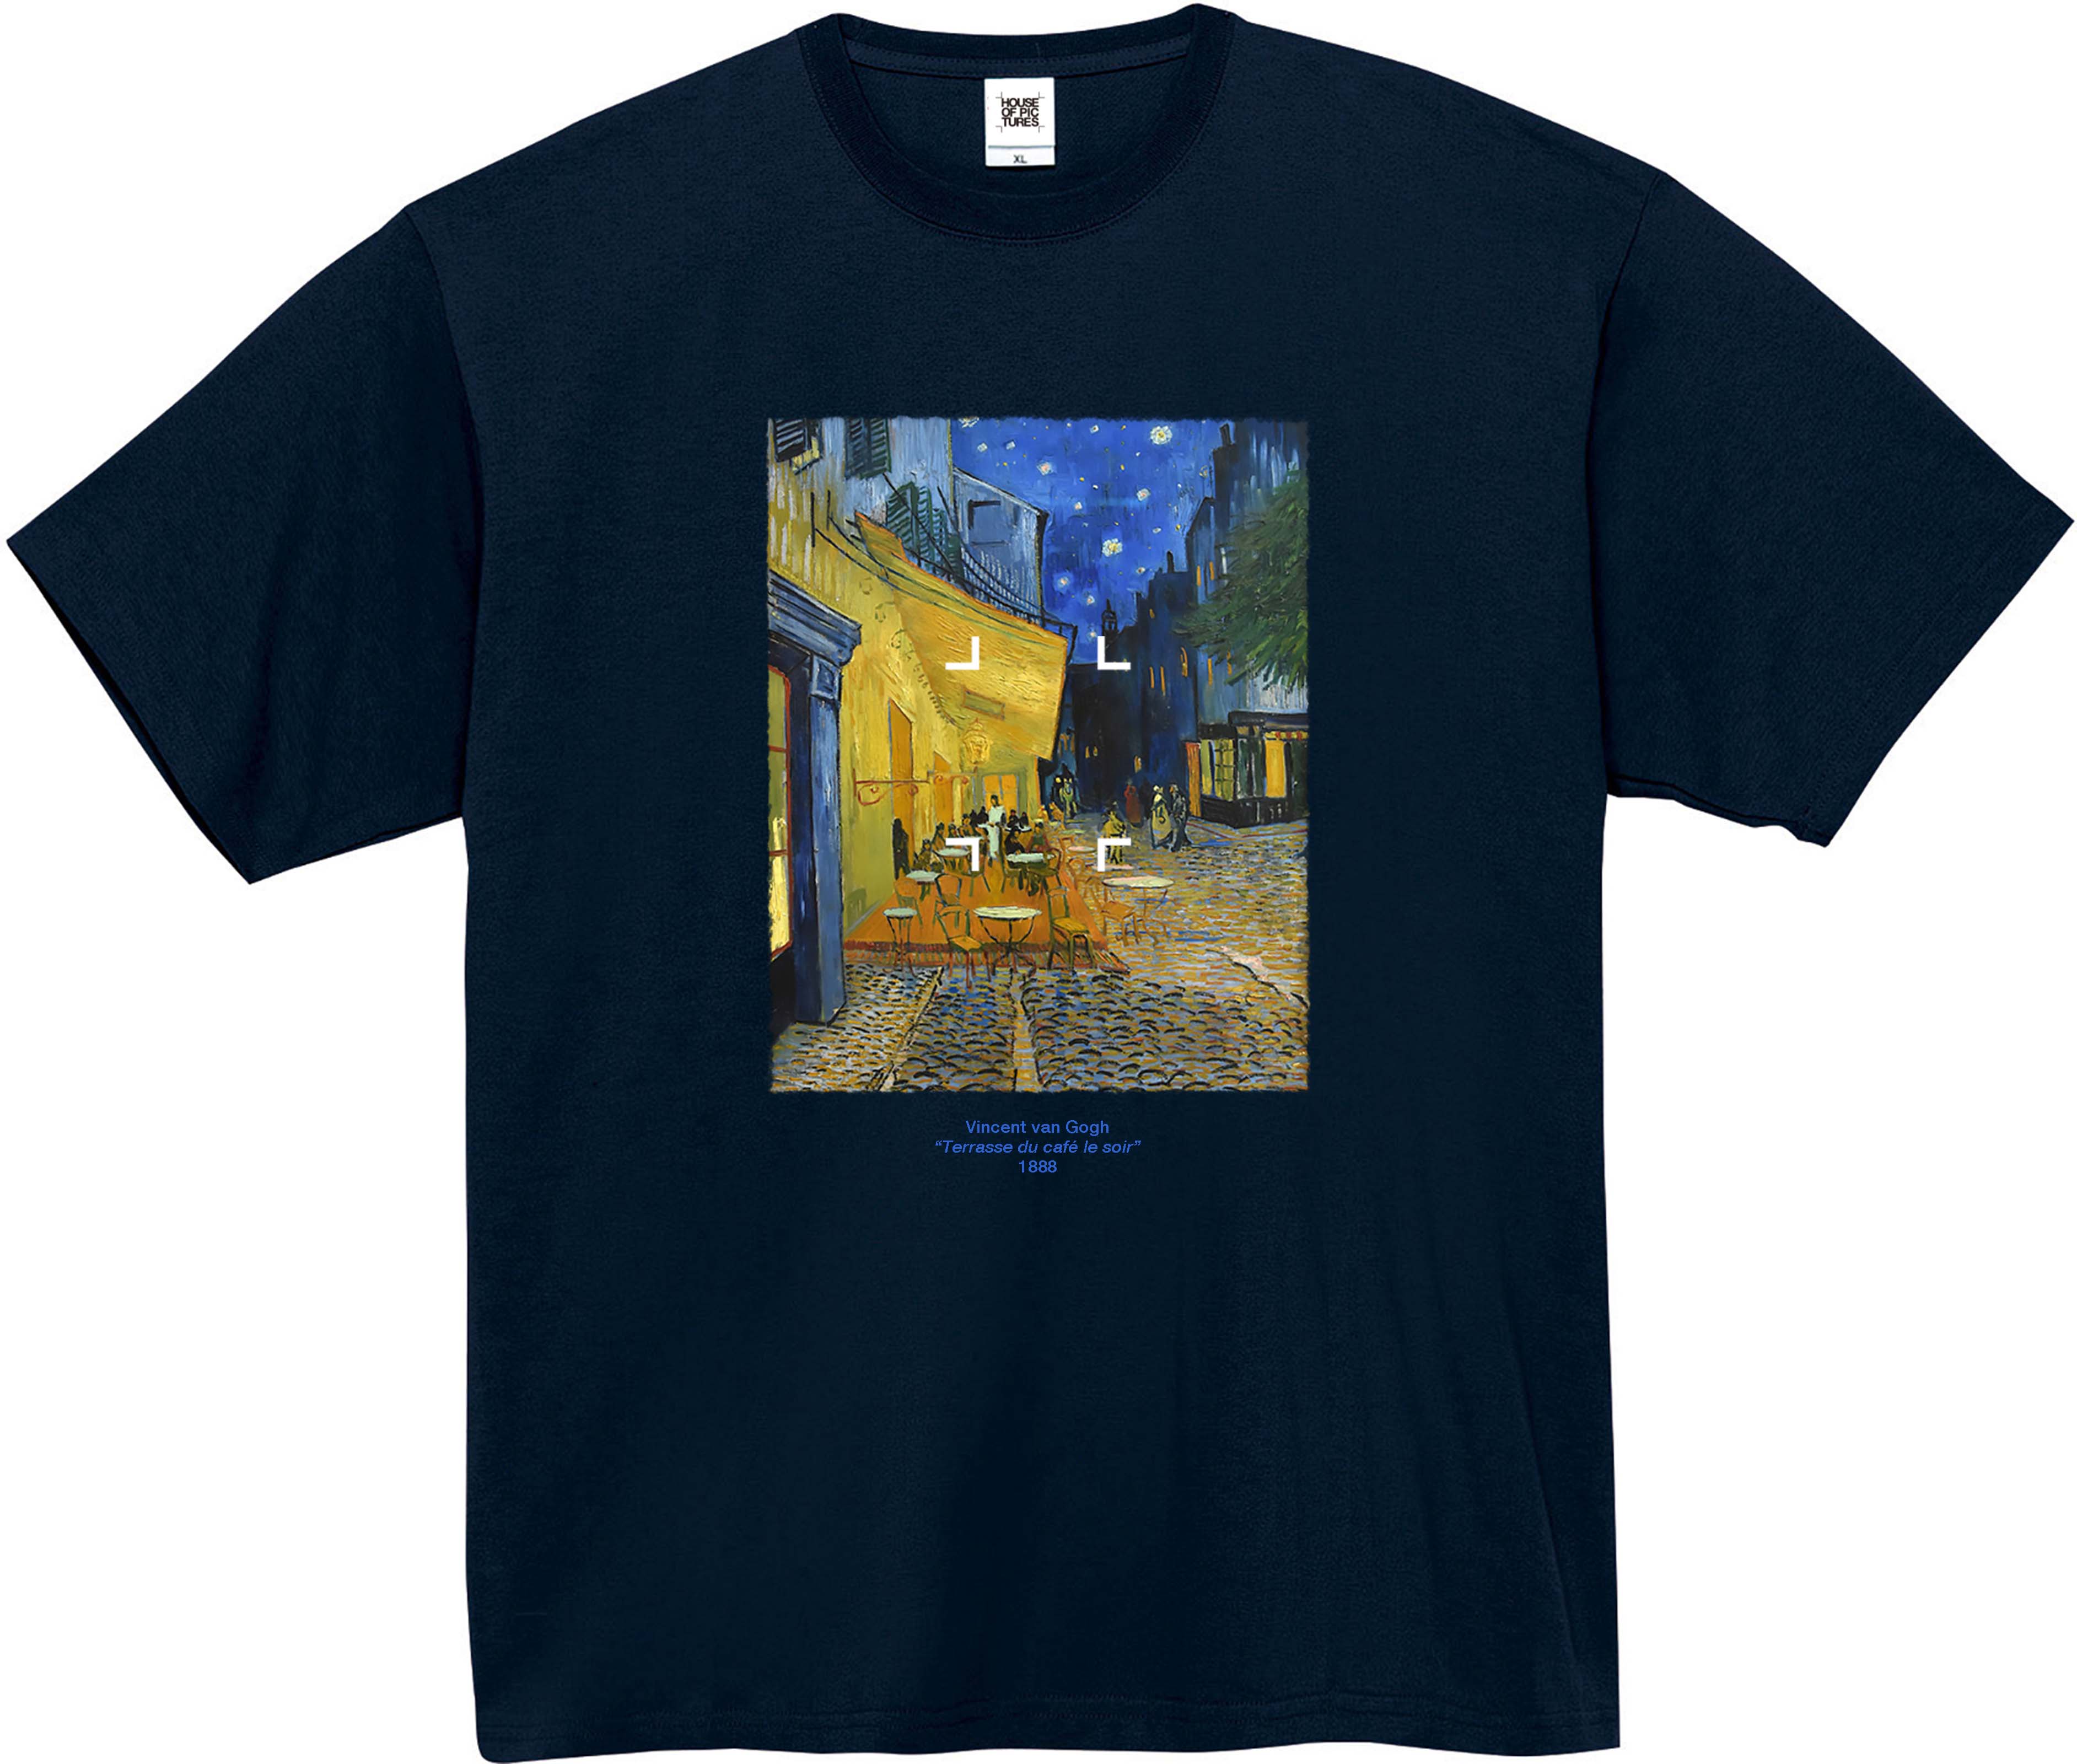 【ナショナルギャラリー】ゴッホ Vincent van Gogh Tシャツ M